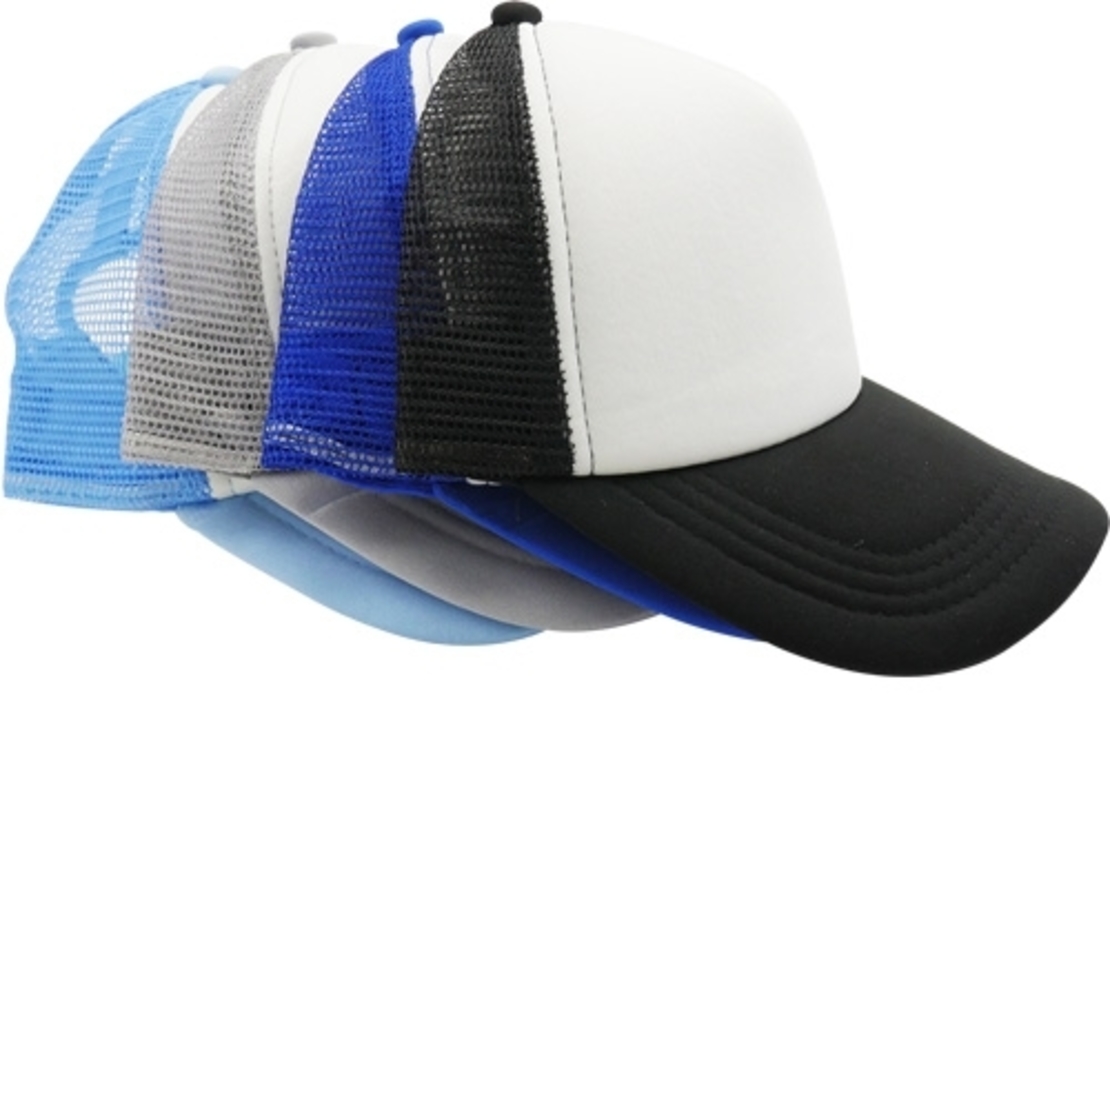 כובע מצחיה רשת לילד (ניתן להדפיס כל תמונה על הכובע)   (MM)